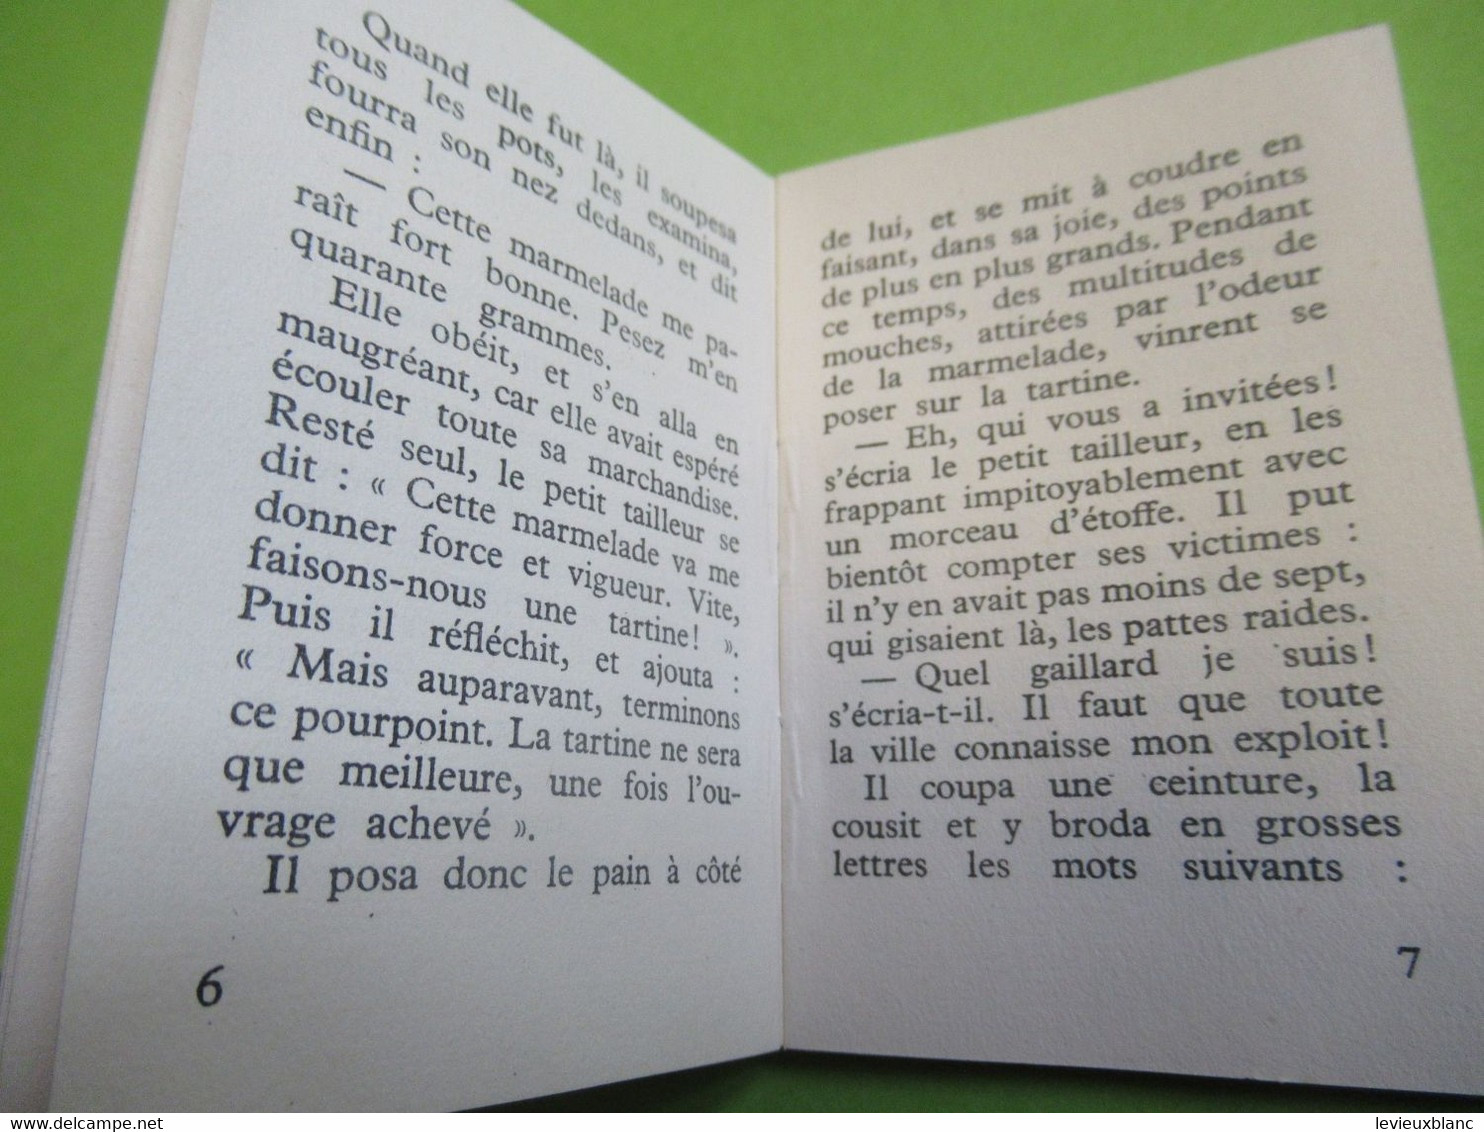 Livret De 24 Pages / LE VAILLANT PETIT TAILLEUR / Conte De GRIMM/ Presses De La Cité/1954           BD169 - Altri & Non Classificati